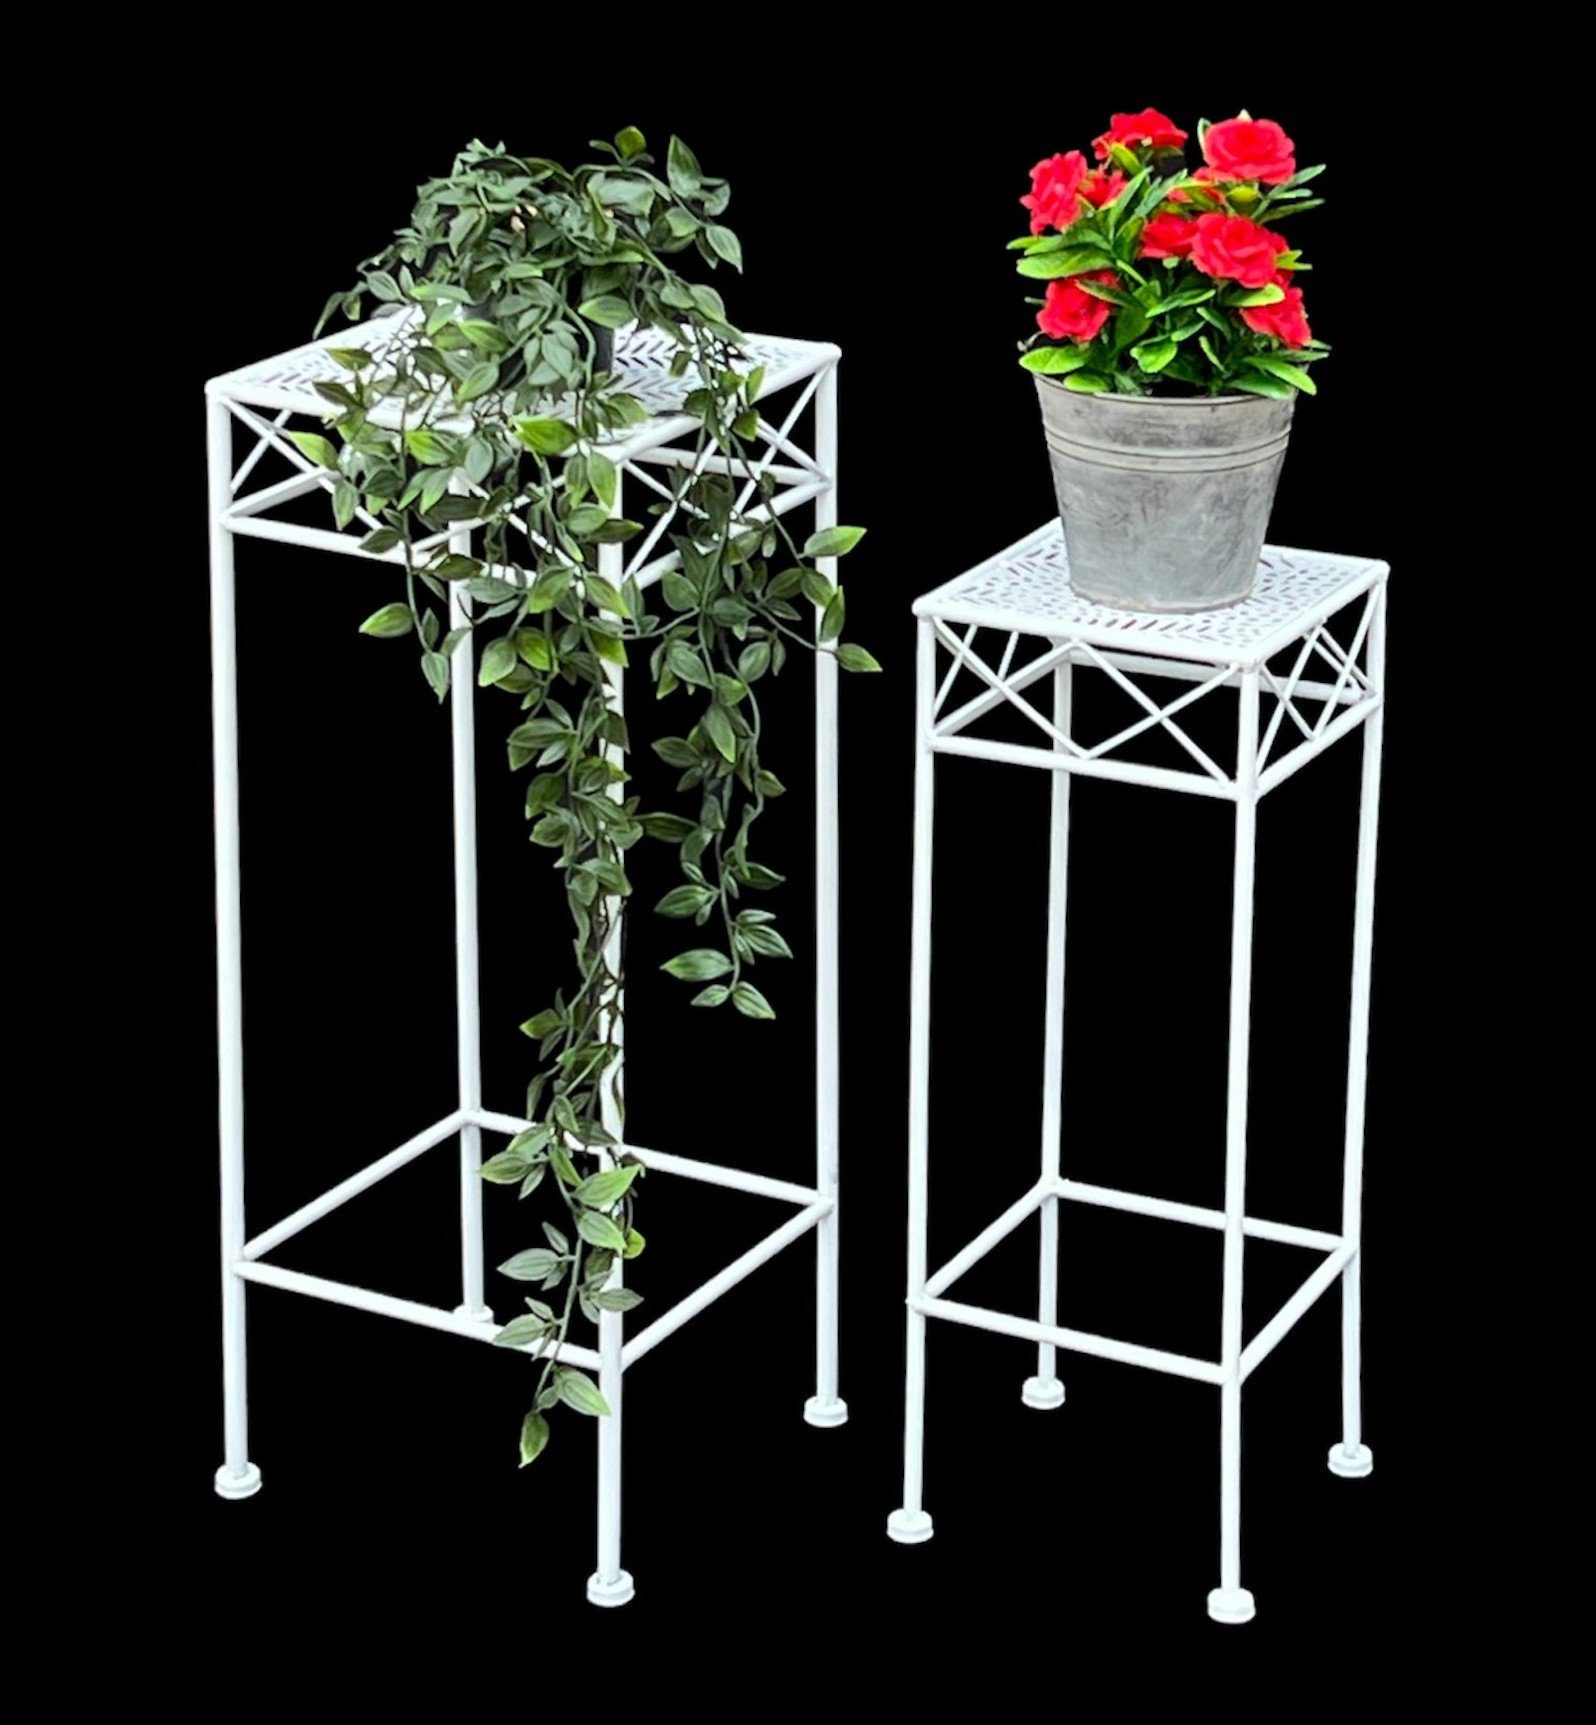 Blumenhocker DanDiBo Eckig Weiß Set Metall Blumenständer Blumenständer 2er Beistelltisch